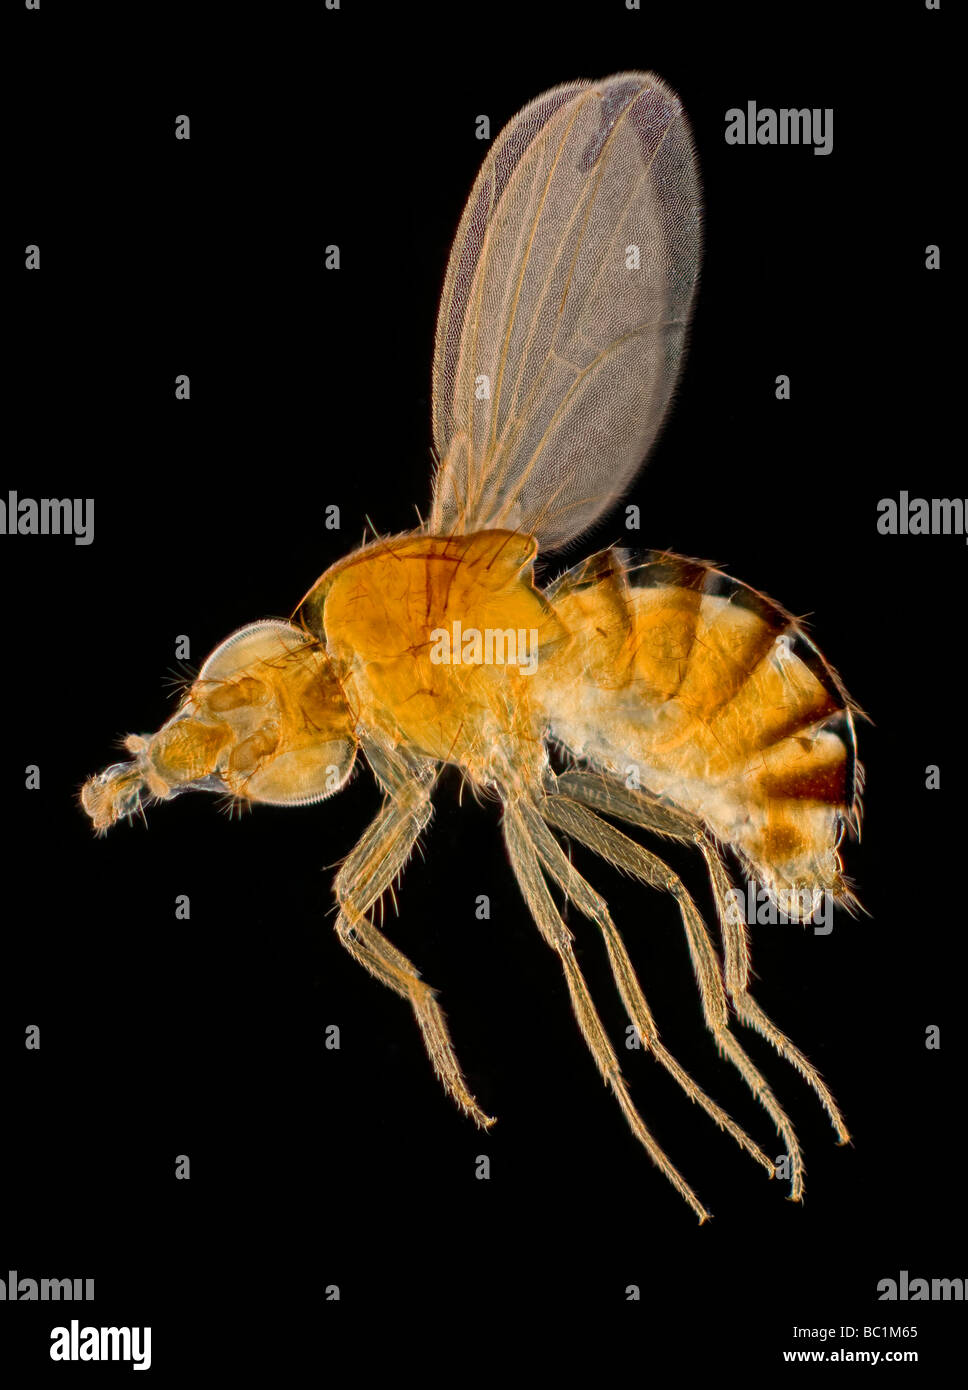 Il White Eyed aceto Drosophila Fly o mosca della frutta, campo oscuro fotomicrografia Foto Stock